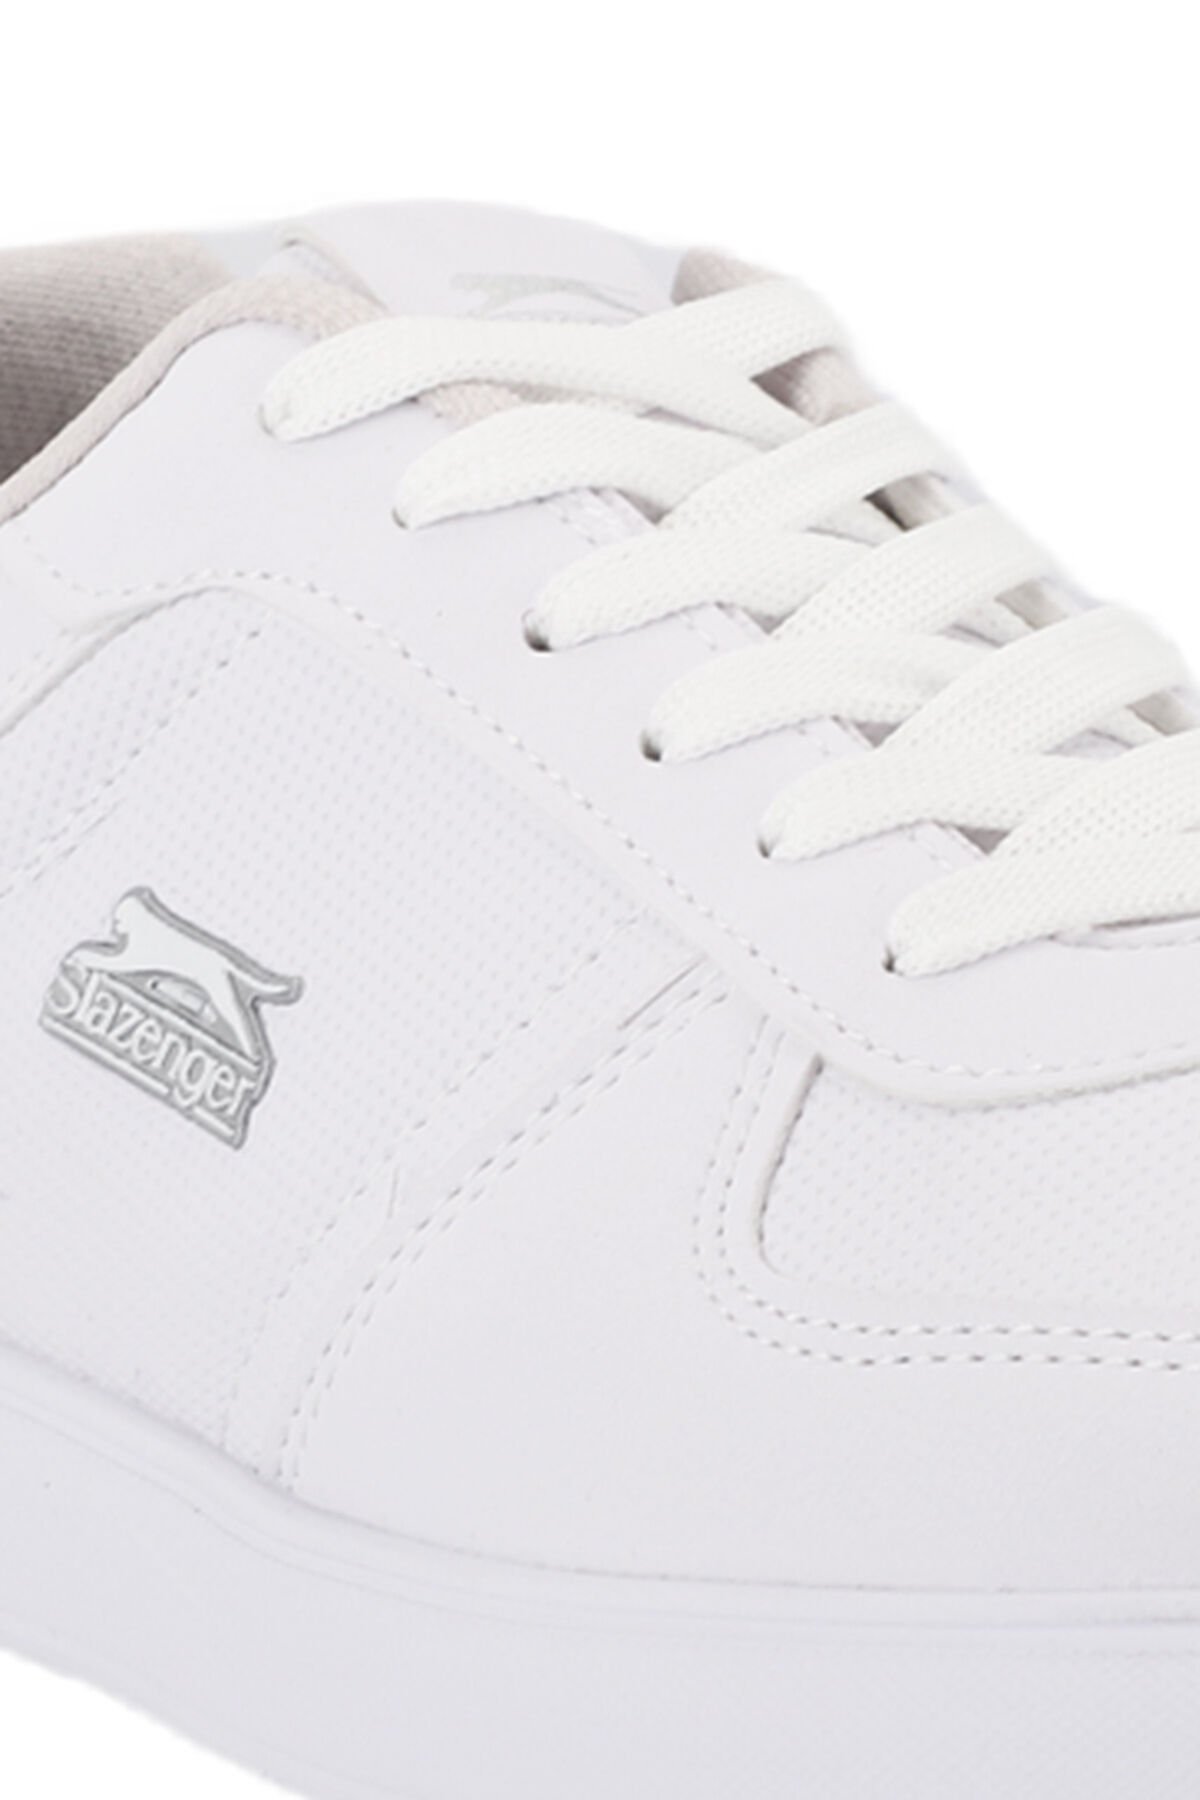 Slazenger POINT NEW I Sneaker Kadın Ayakkabı Beyaz - Thumbnail